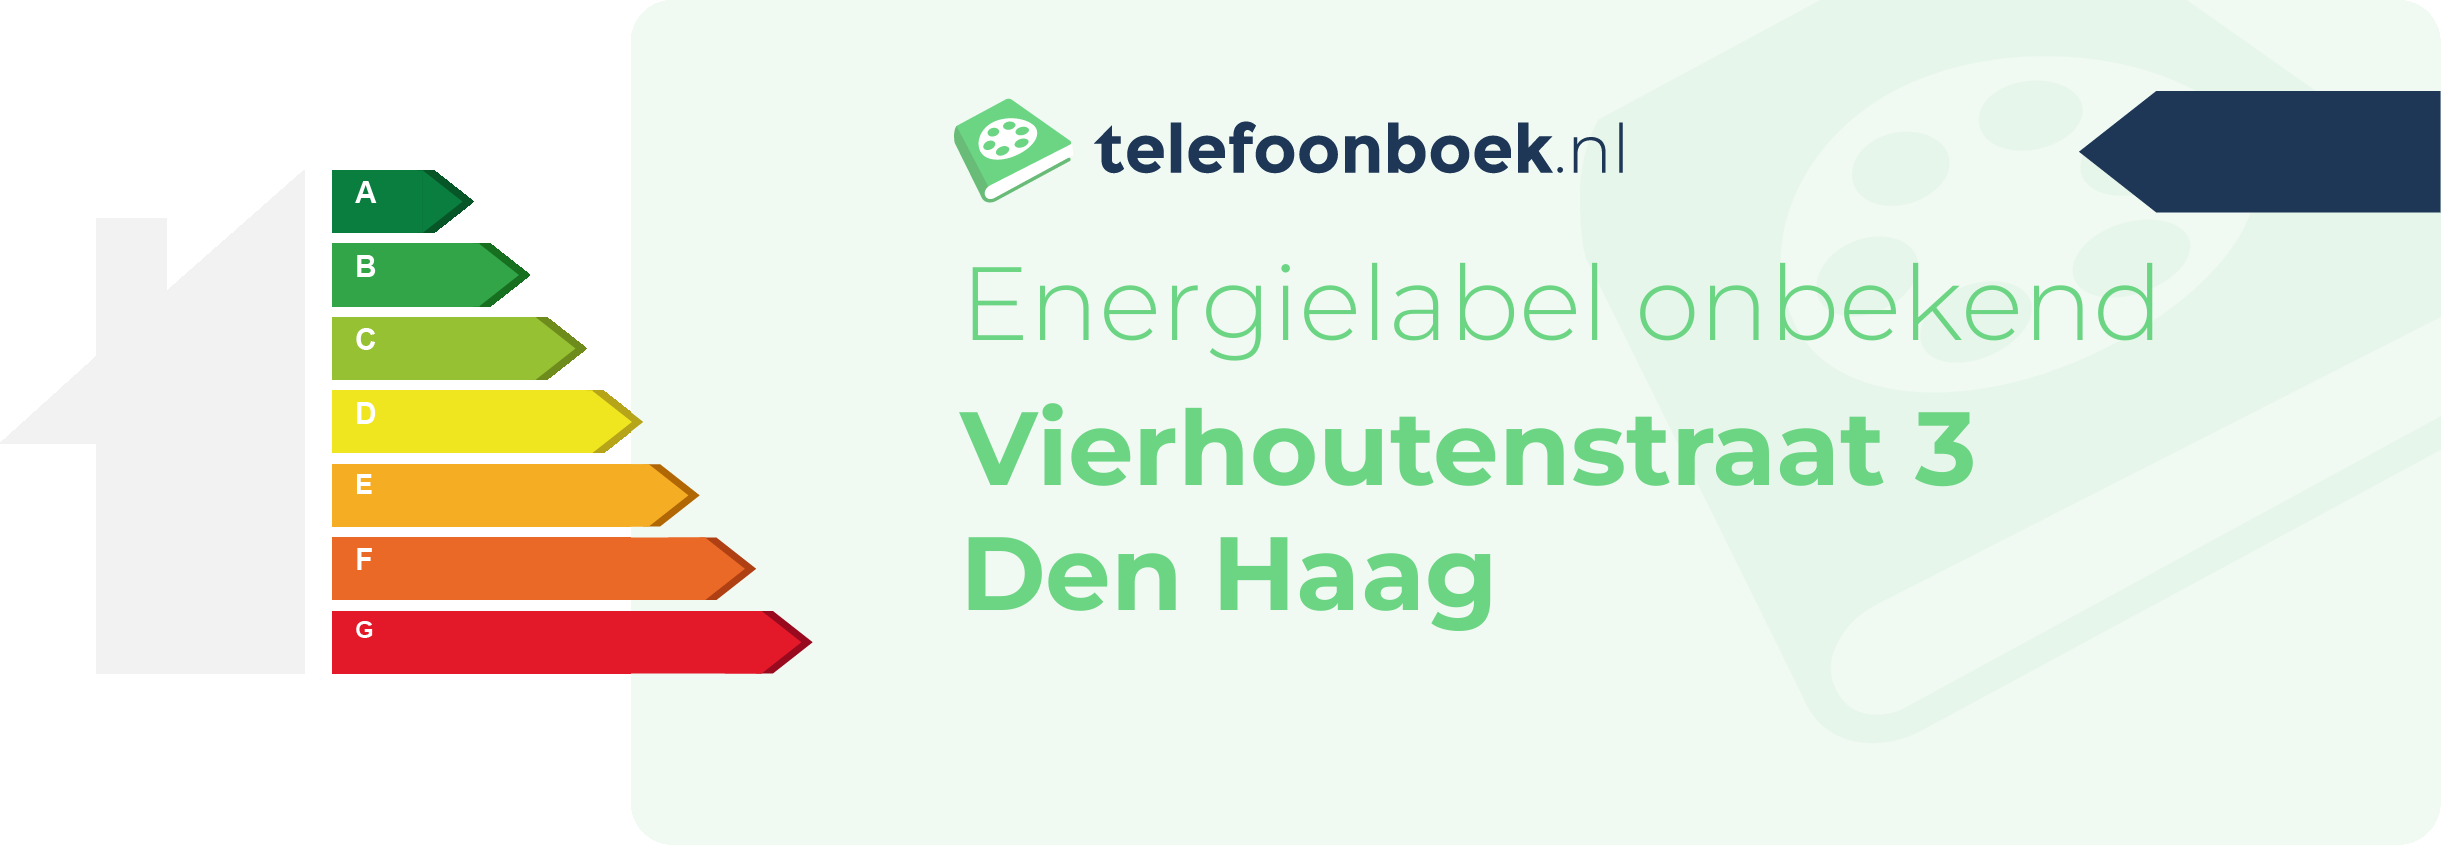 Energielabel Vierhoutenstraat 3 Den Haag